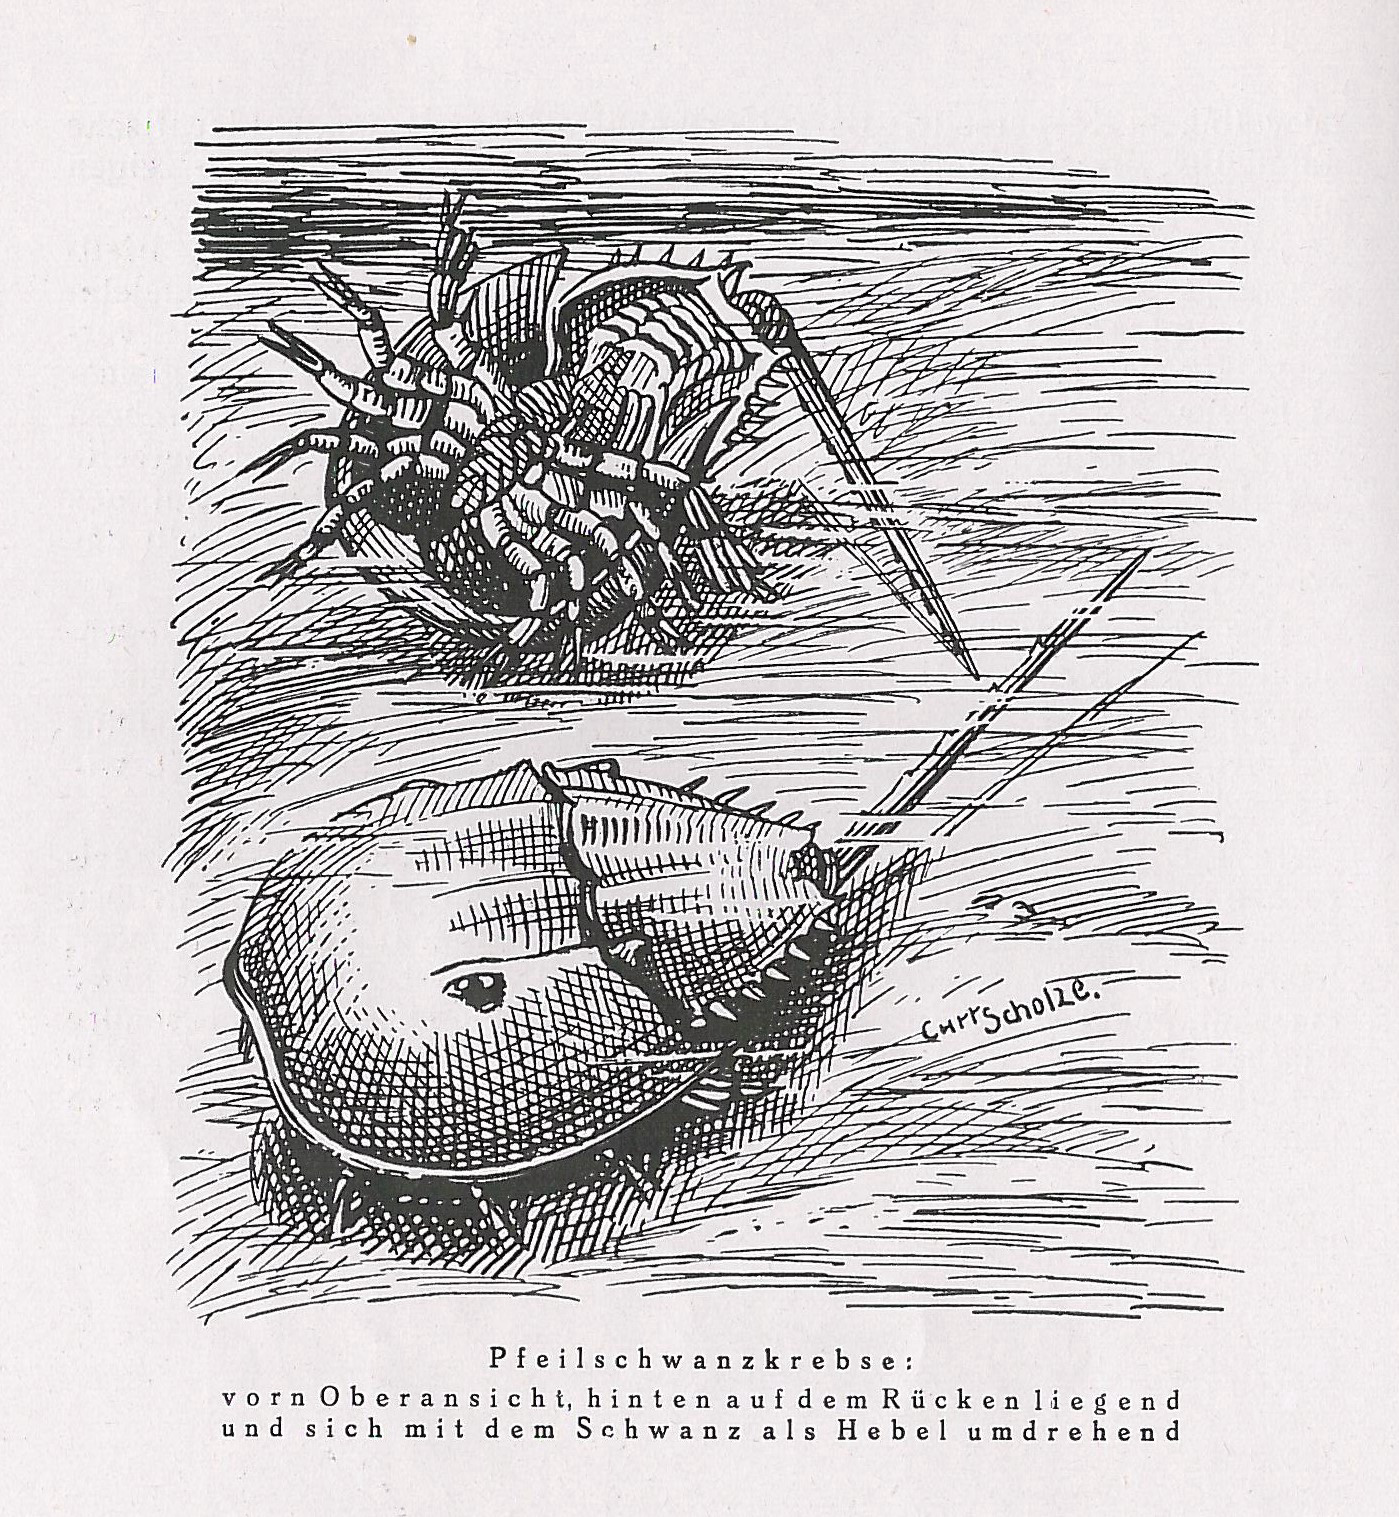 Zeichnung von drei Pfeilschwanzkrebsen an einem Strand mit Bildunterschrift.